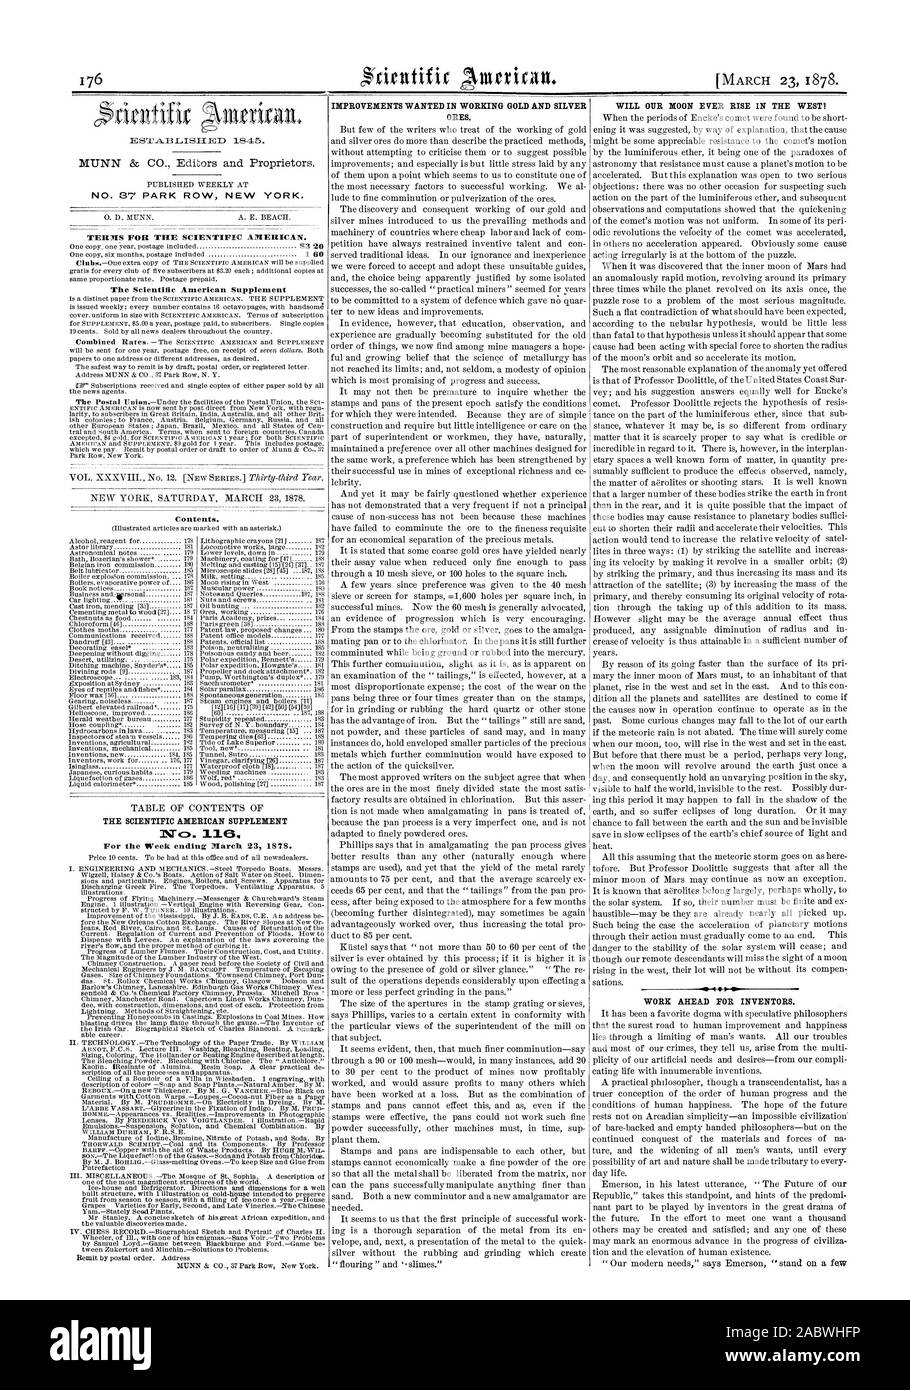 Los términos para la Scientific American. La Scientific American complementar el contenido. ATc". 0 Para la semana que terminó el 23 de marzo de 1878., 1878-03-23 Foto de stock